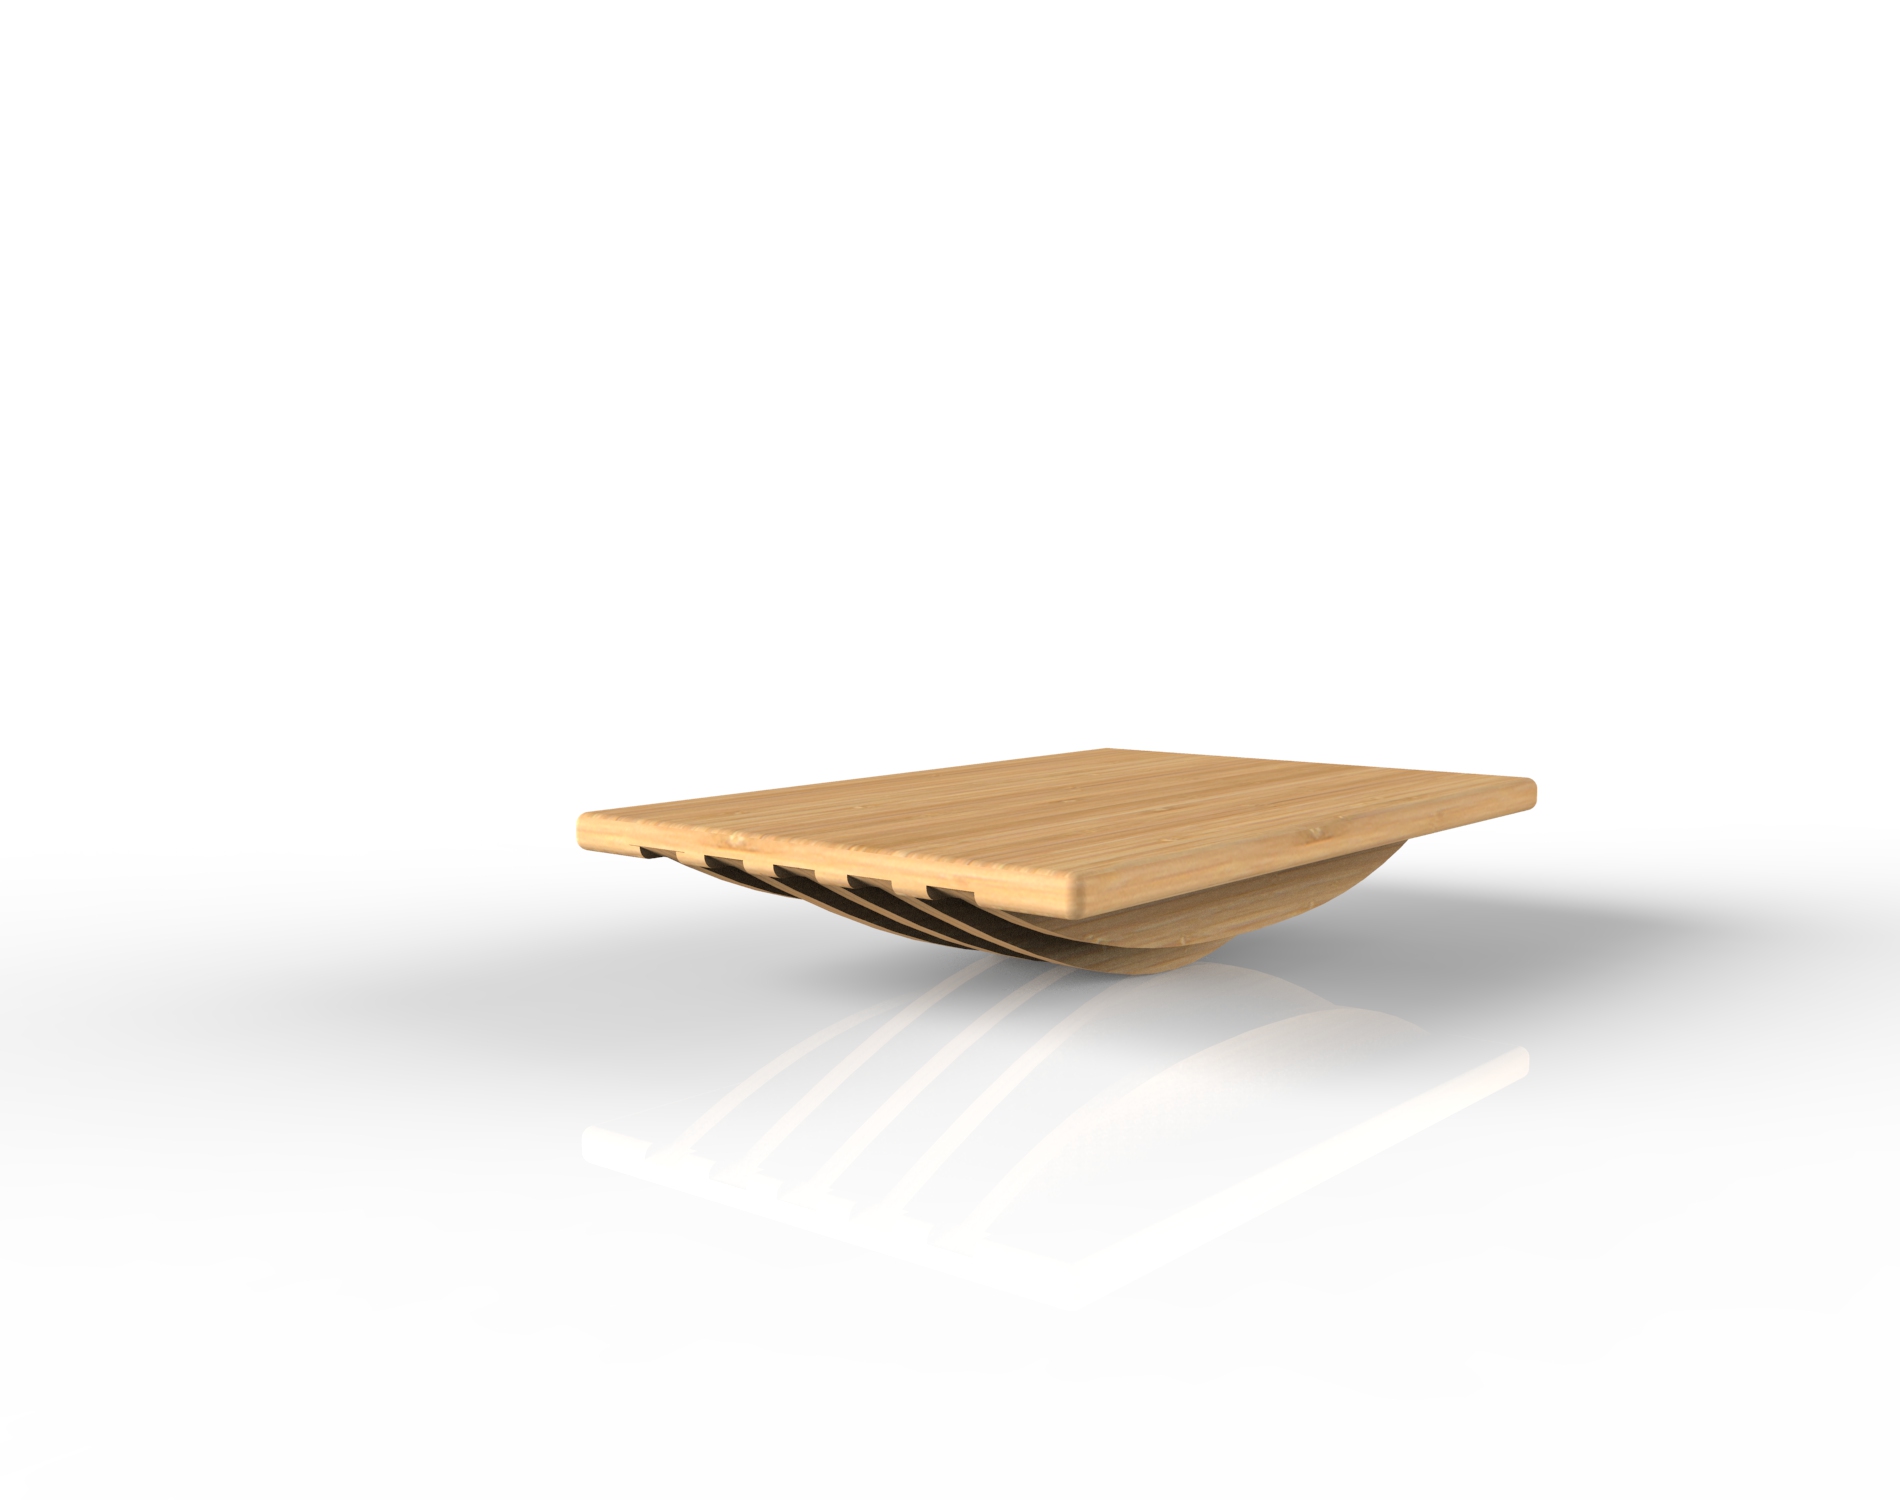 Bamboo Balance Board Concept